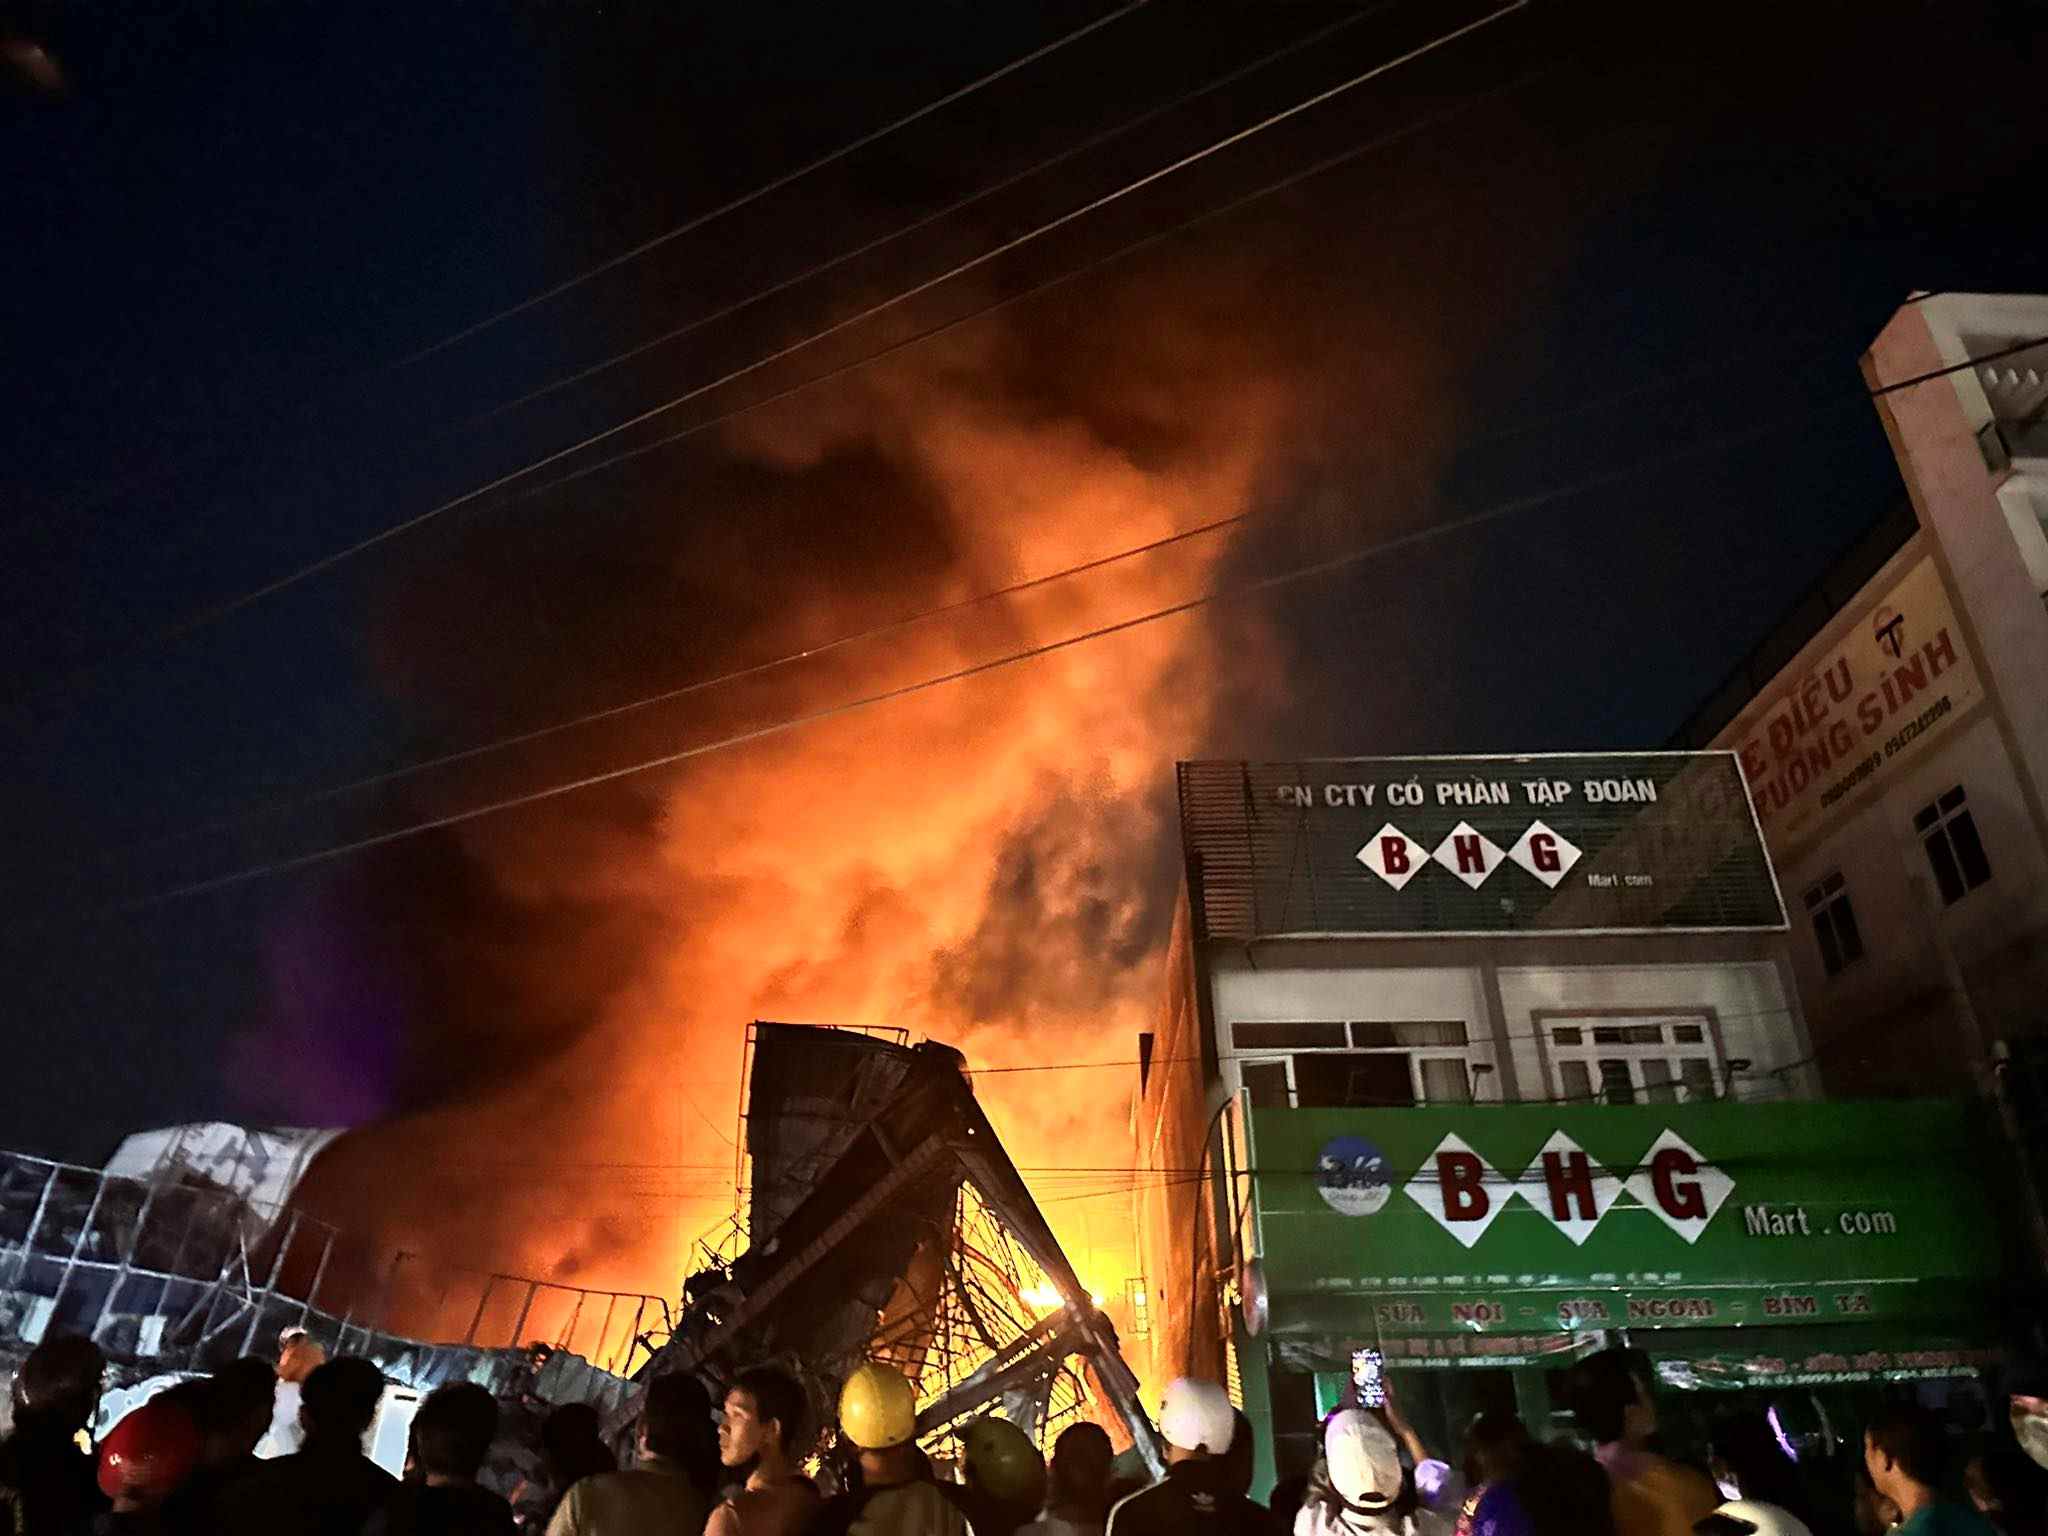 Cháy lớn ở nhà sách trên địa bàn thị xã Phước Long, tỉnh Bình Phước. Ảnh: Bạn đọc cung cấp